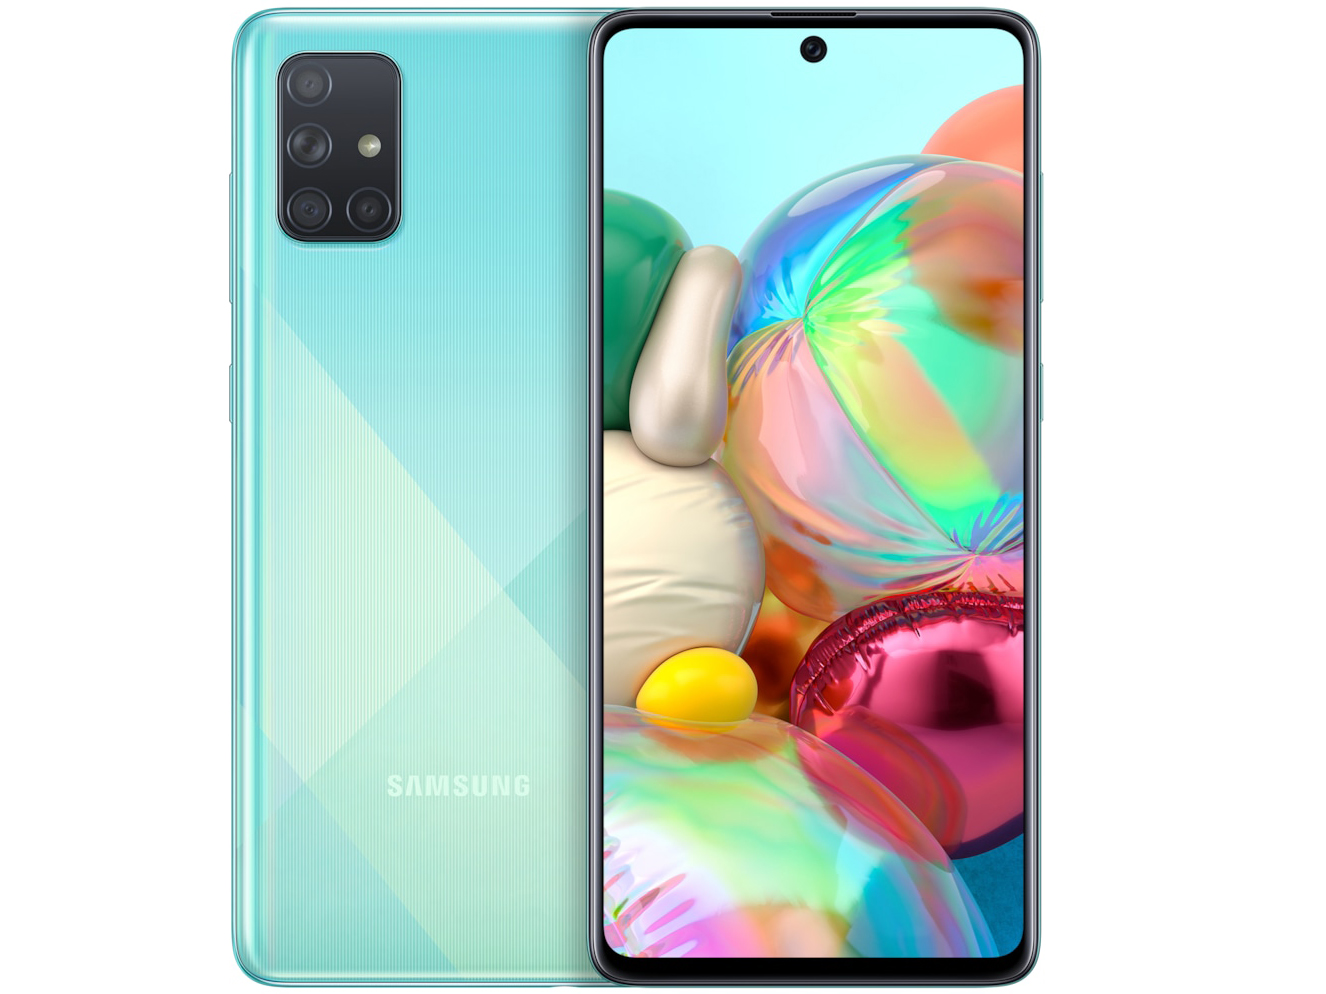 Dòng điện thoại Samsung Galaxy A Series đã được cải tiến để mang đến trải nghiệm tuyệt vời hơn. Những hình ảnh chất lượng cao đang chờ đón bạn. Đến và xem ngay!